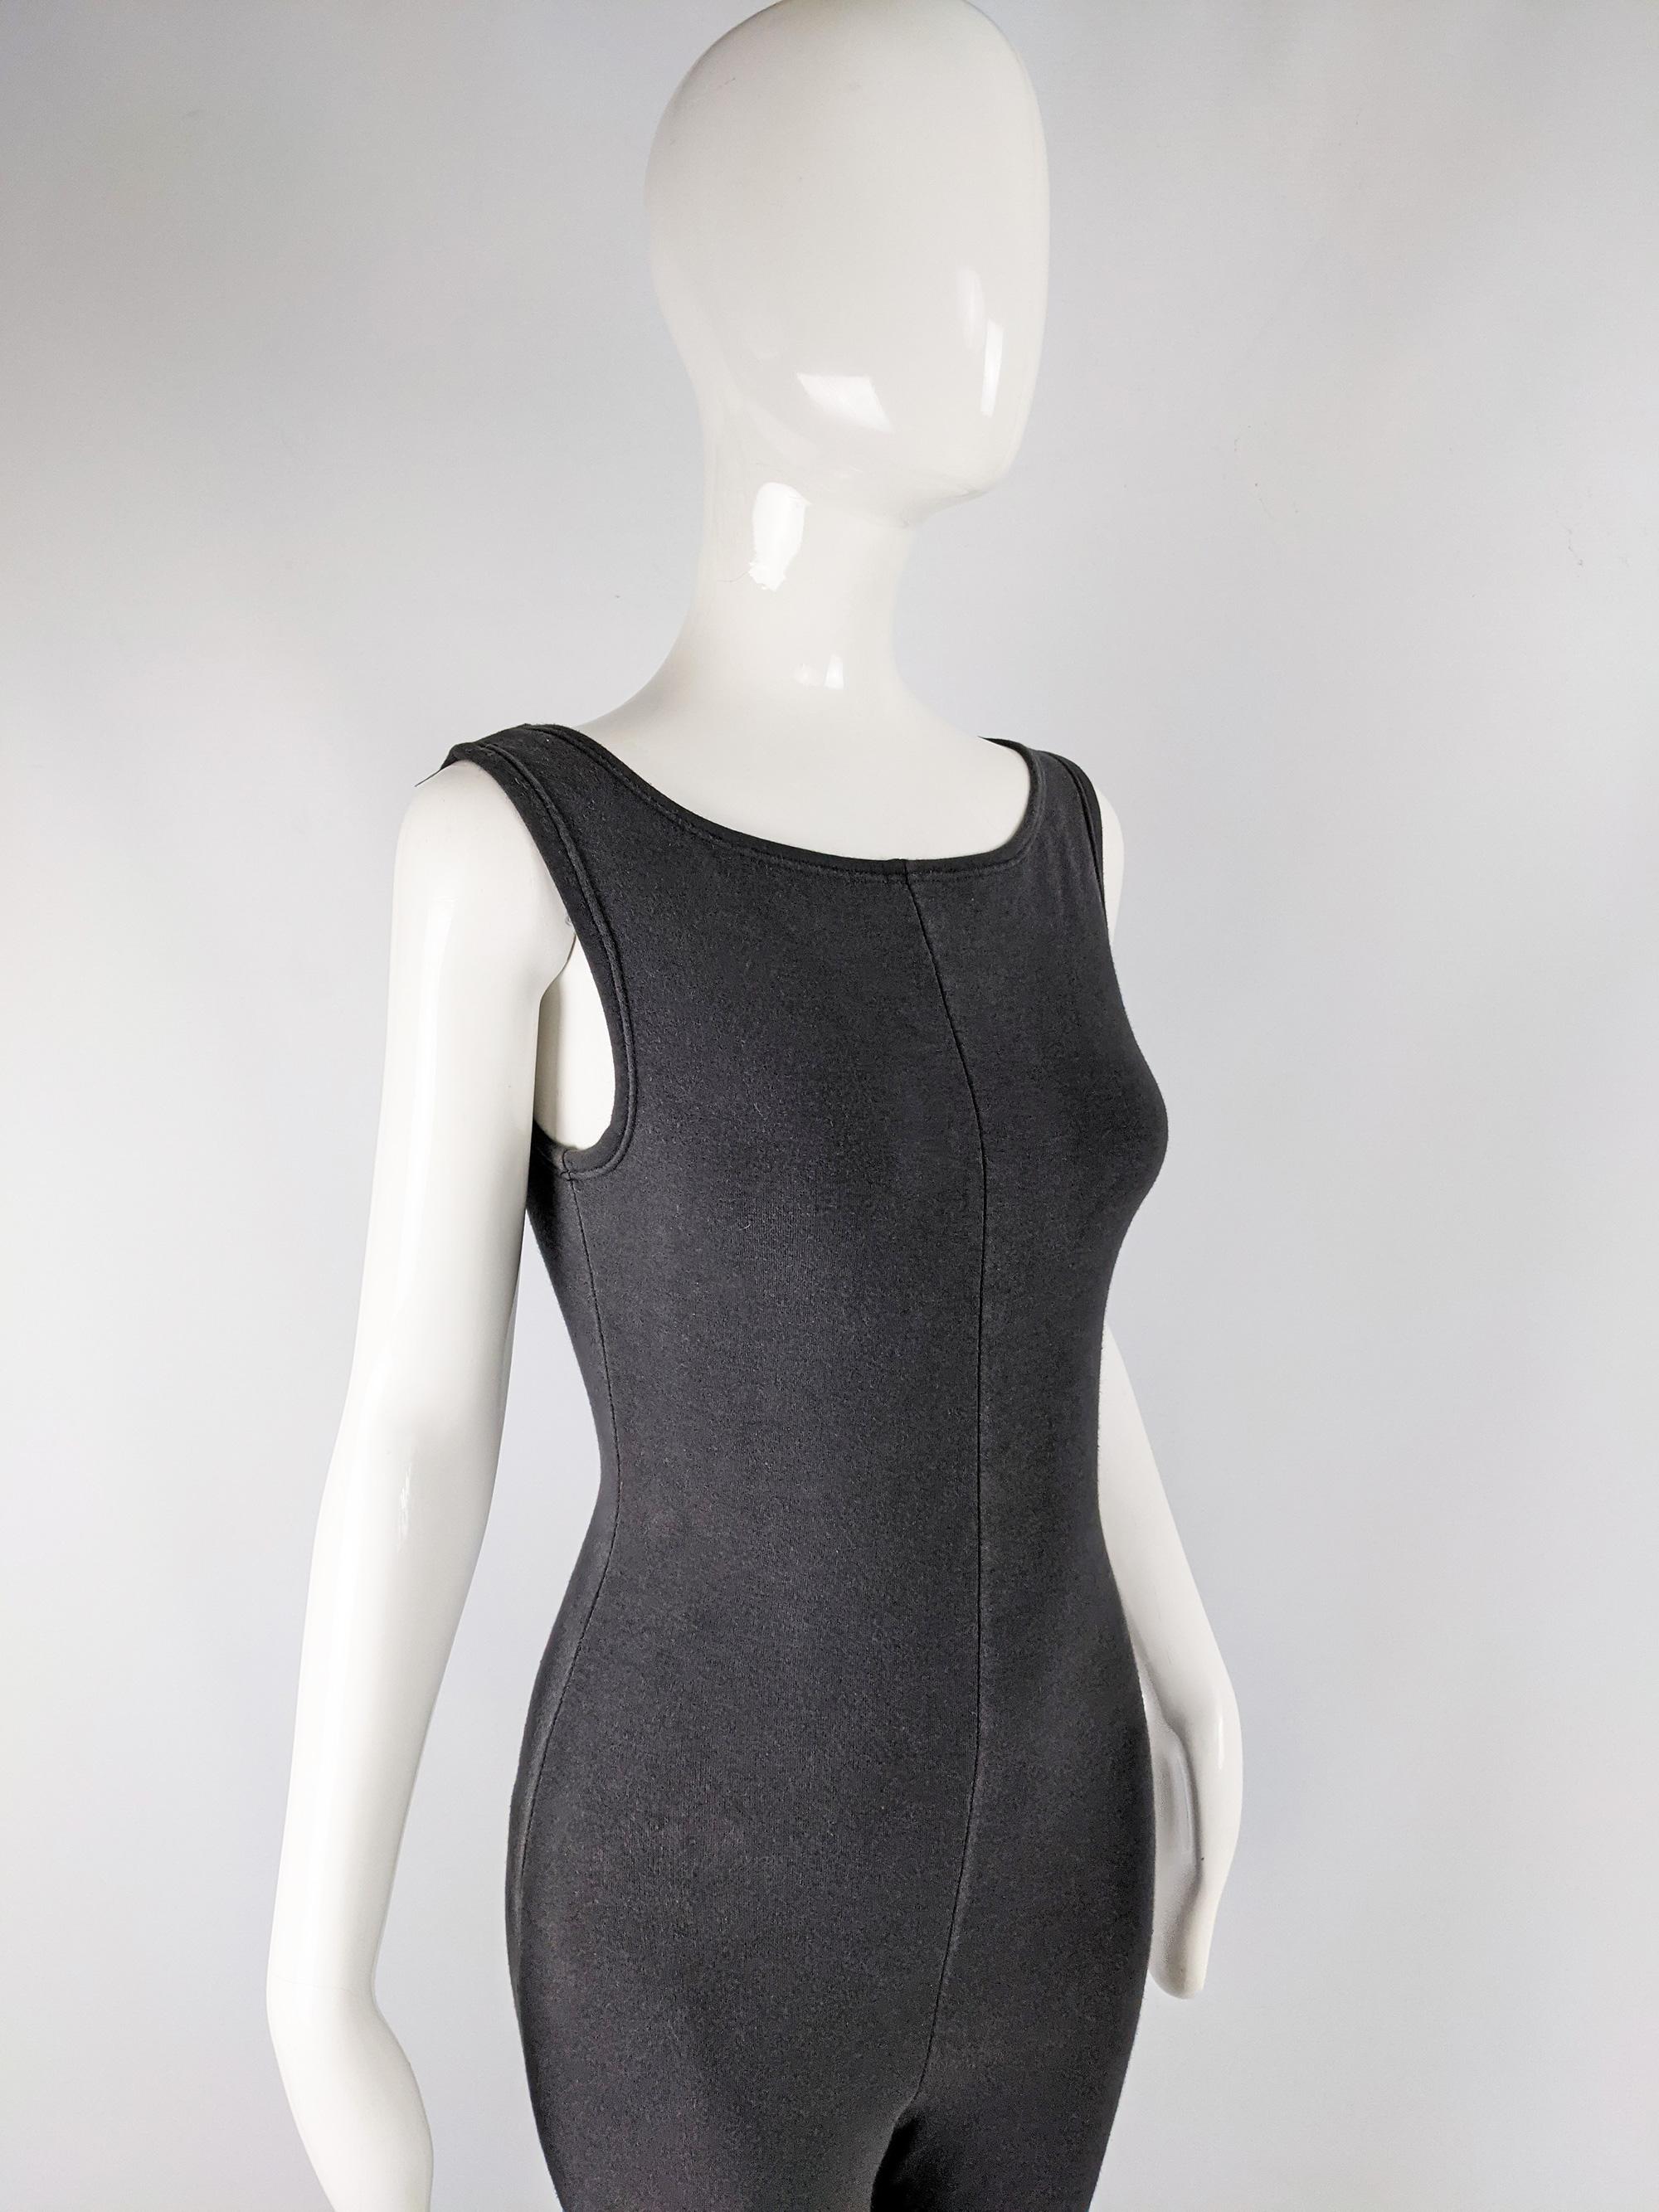 Jean Paul Gaultier Vintage Black Bodycon Jumpsuit, 1980s For Sale 1